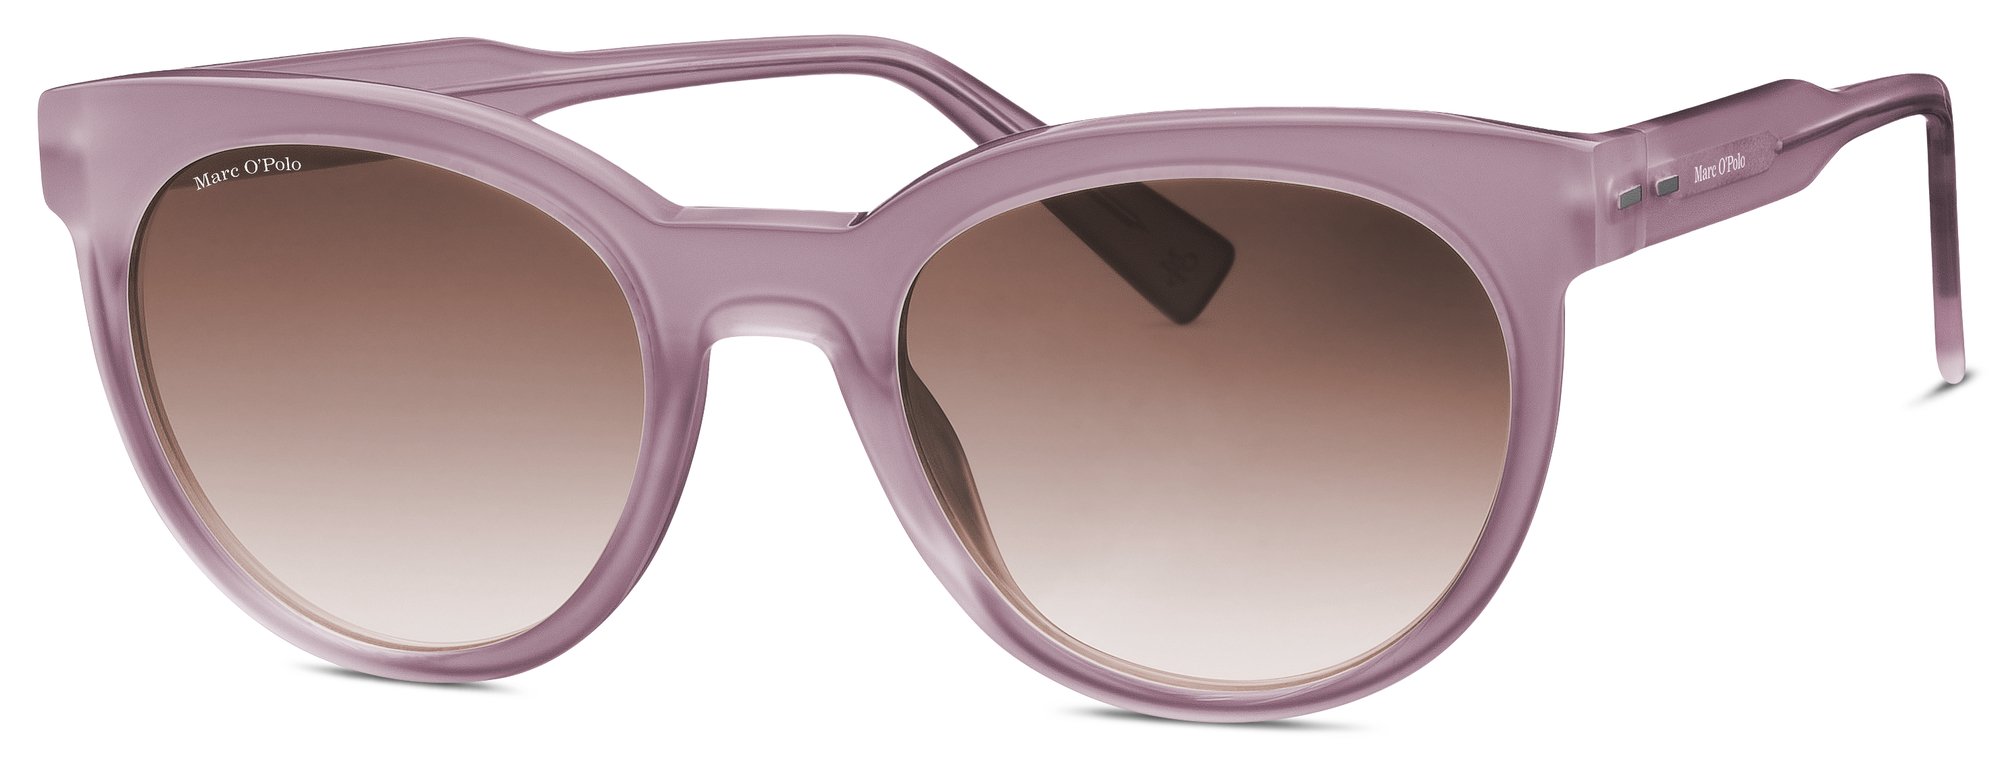 Das Bild zeigt die Sonnenbrille 506202 50 von der Marke Marc O‘Polo in rosa.